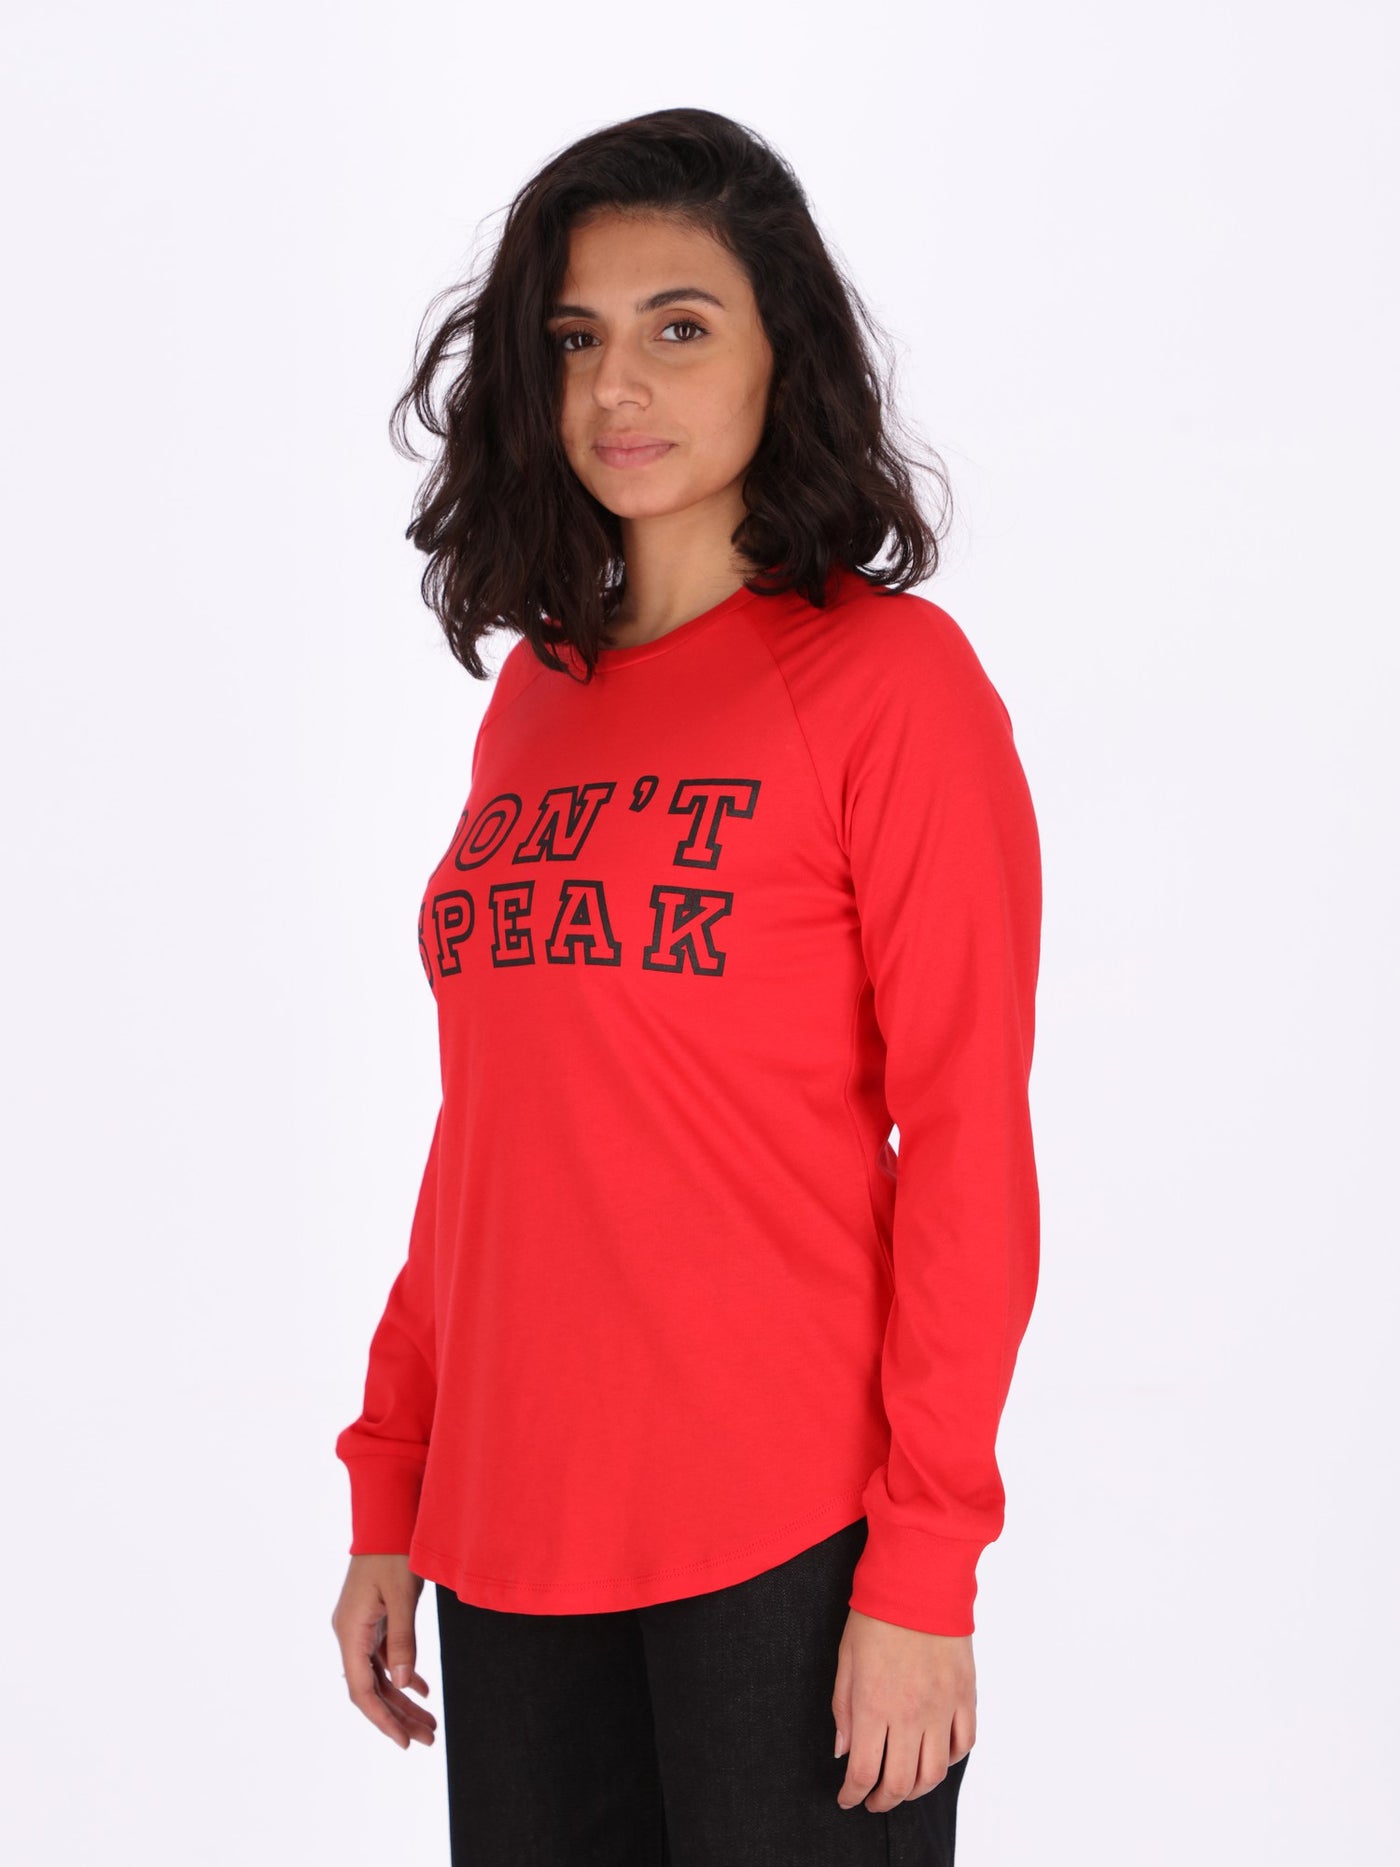 OR Women Front Print Sweatshirt